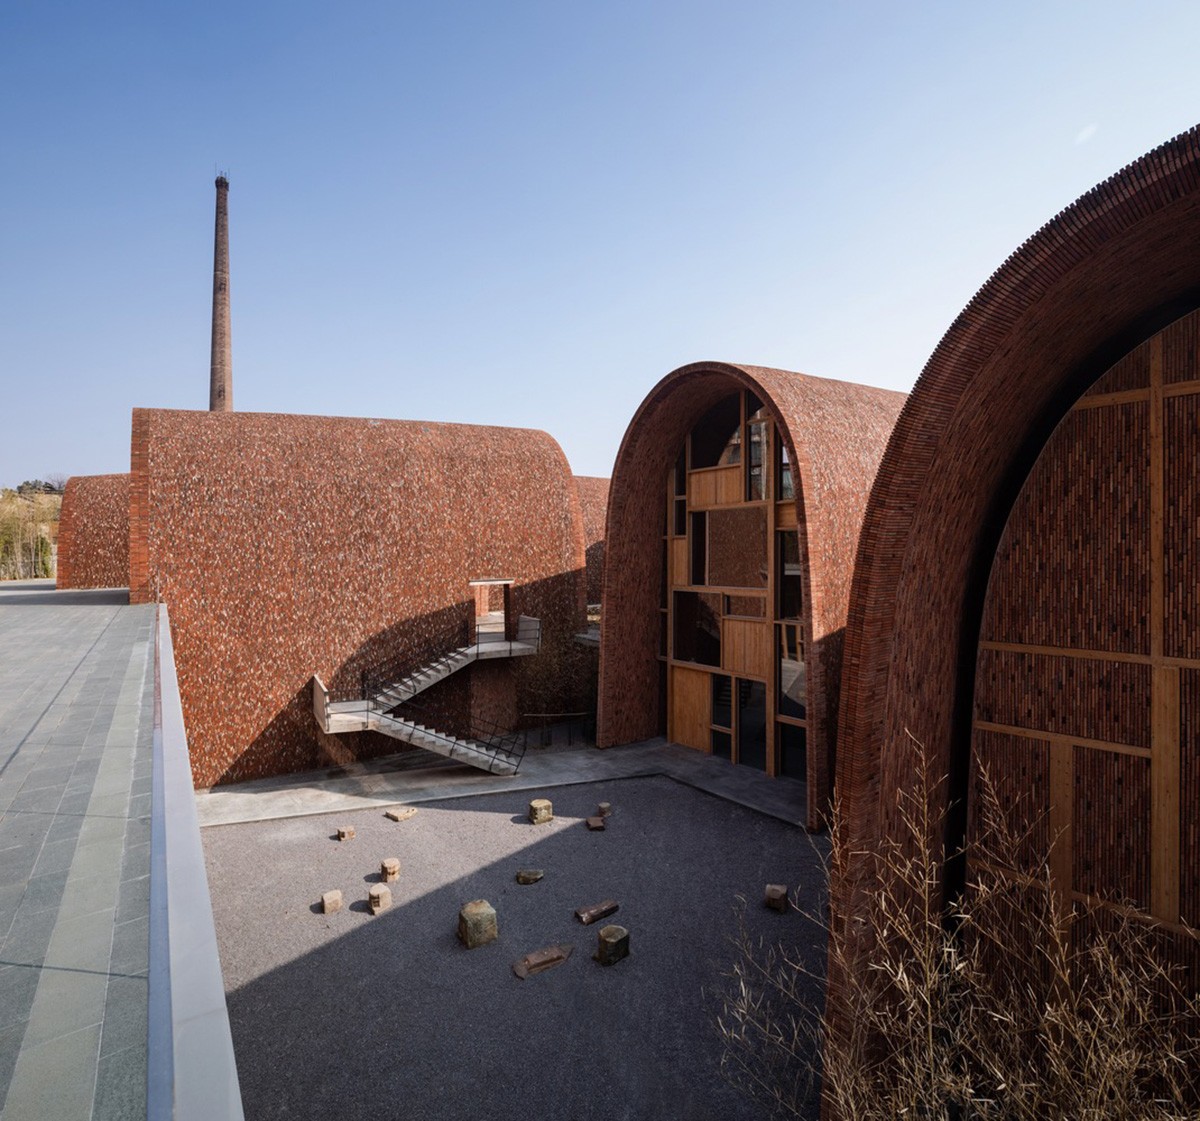 Estúdio projeta museu com estruturas circulares inspiradas em fornos de cerâmica na China (Foto: Schran)